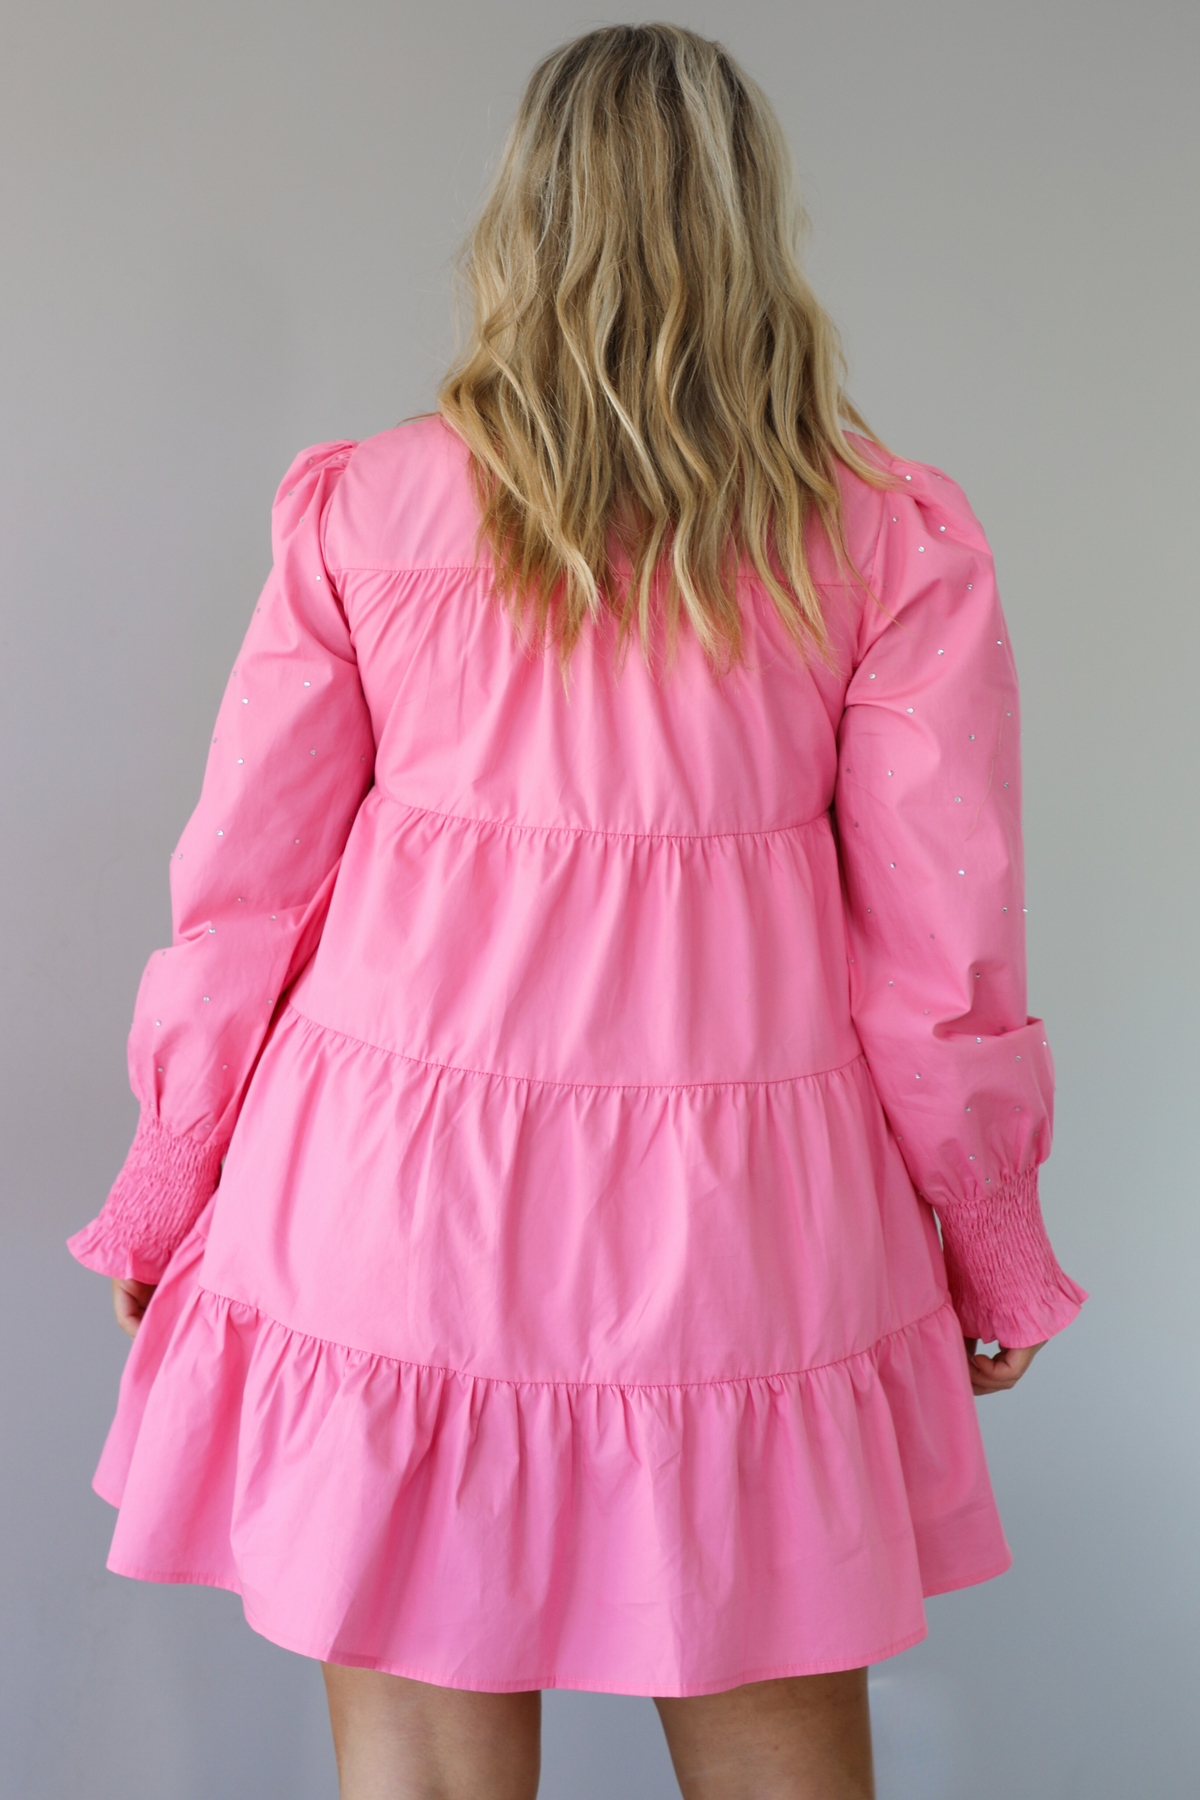 A Little Sparkle Dress: Pink